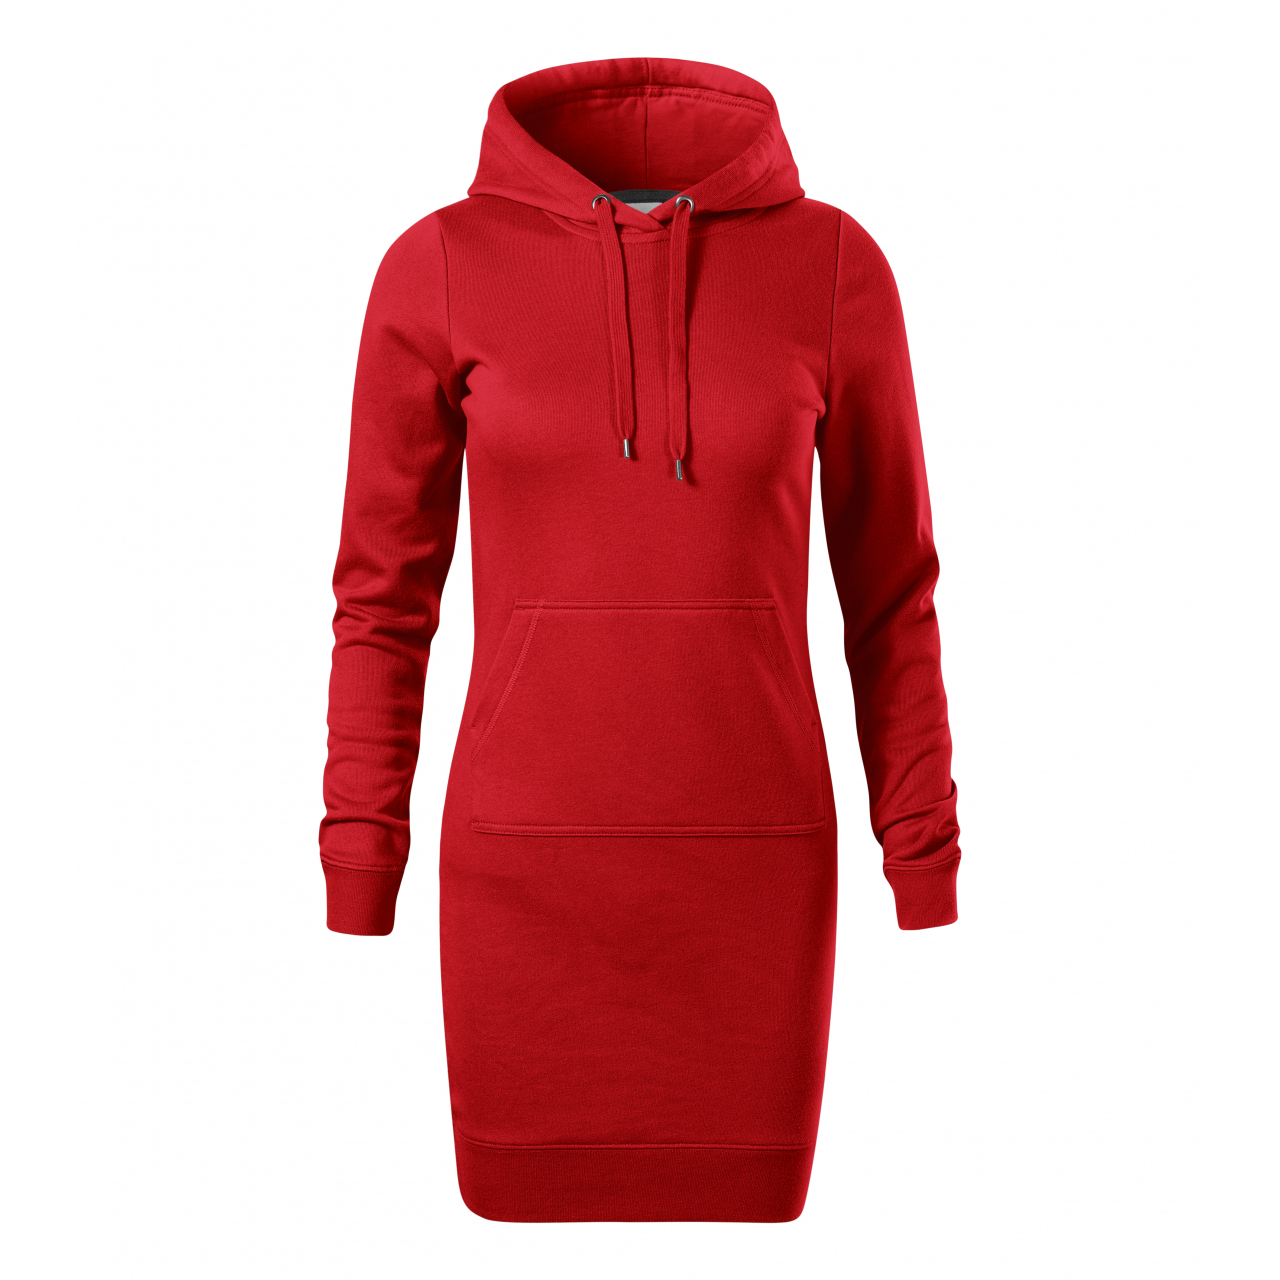 Šaty dámské Malfini Snap - červené, L